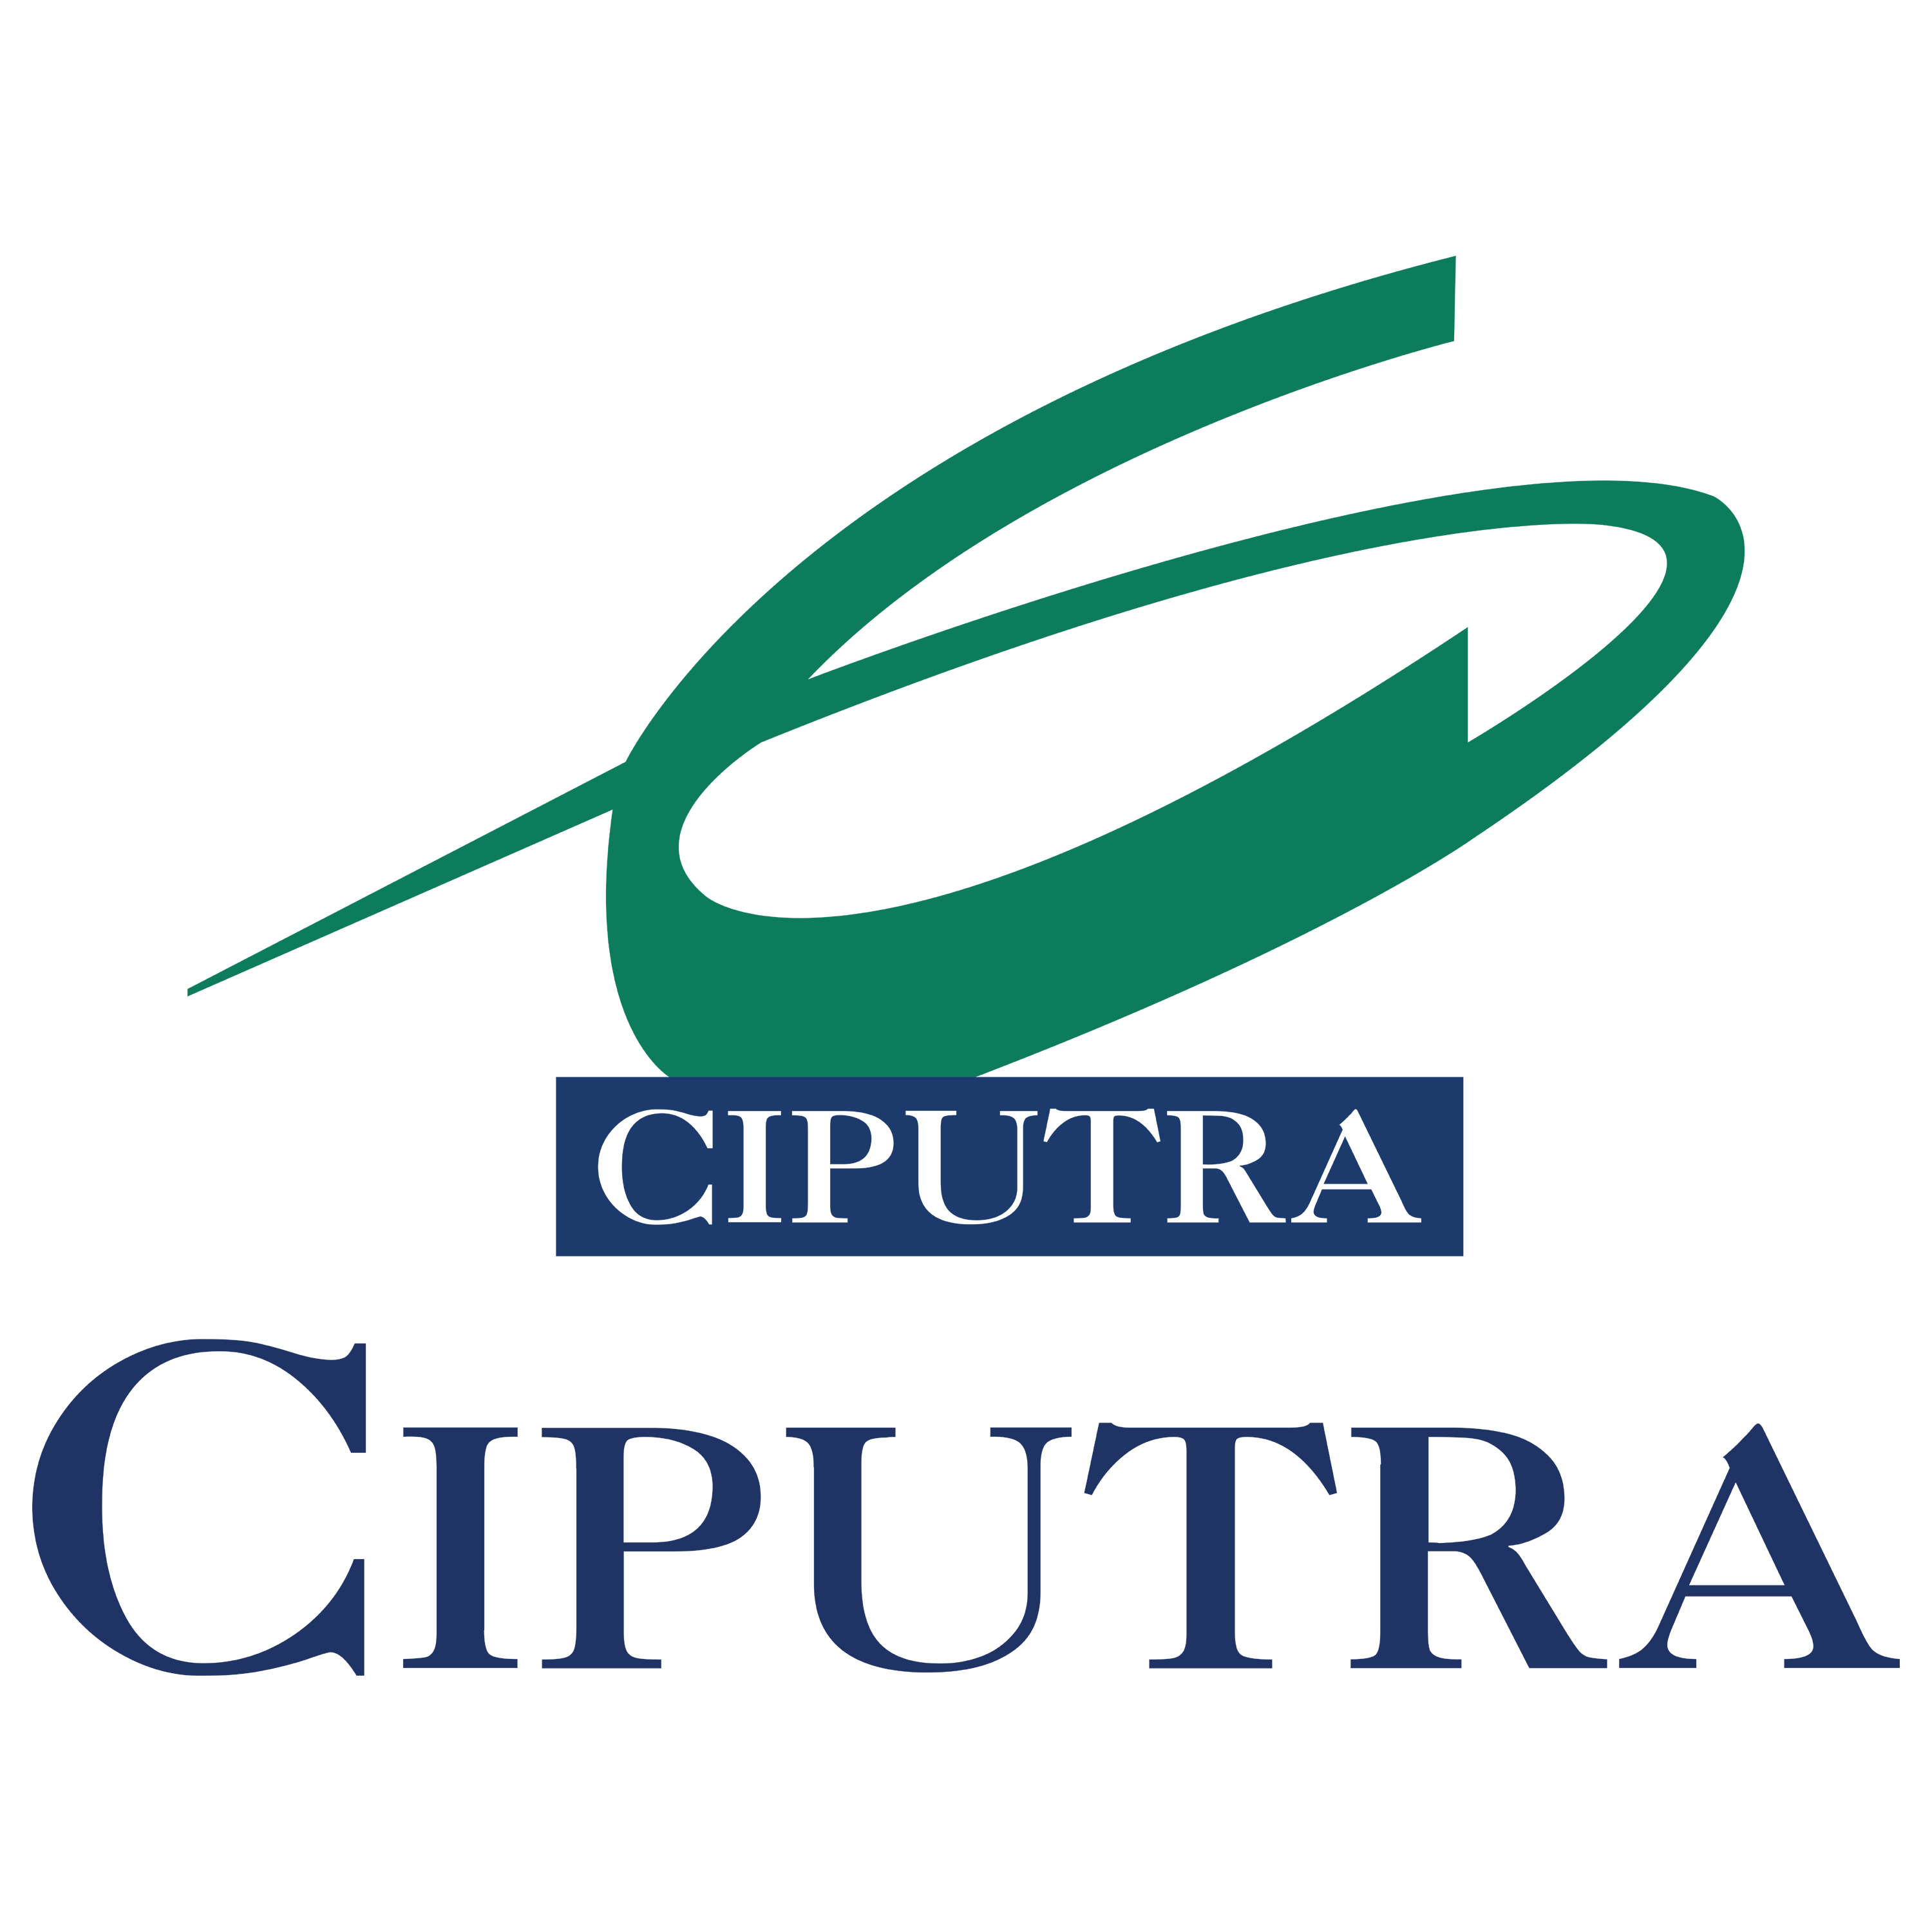 Ciputra Logo Transparent Image